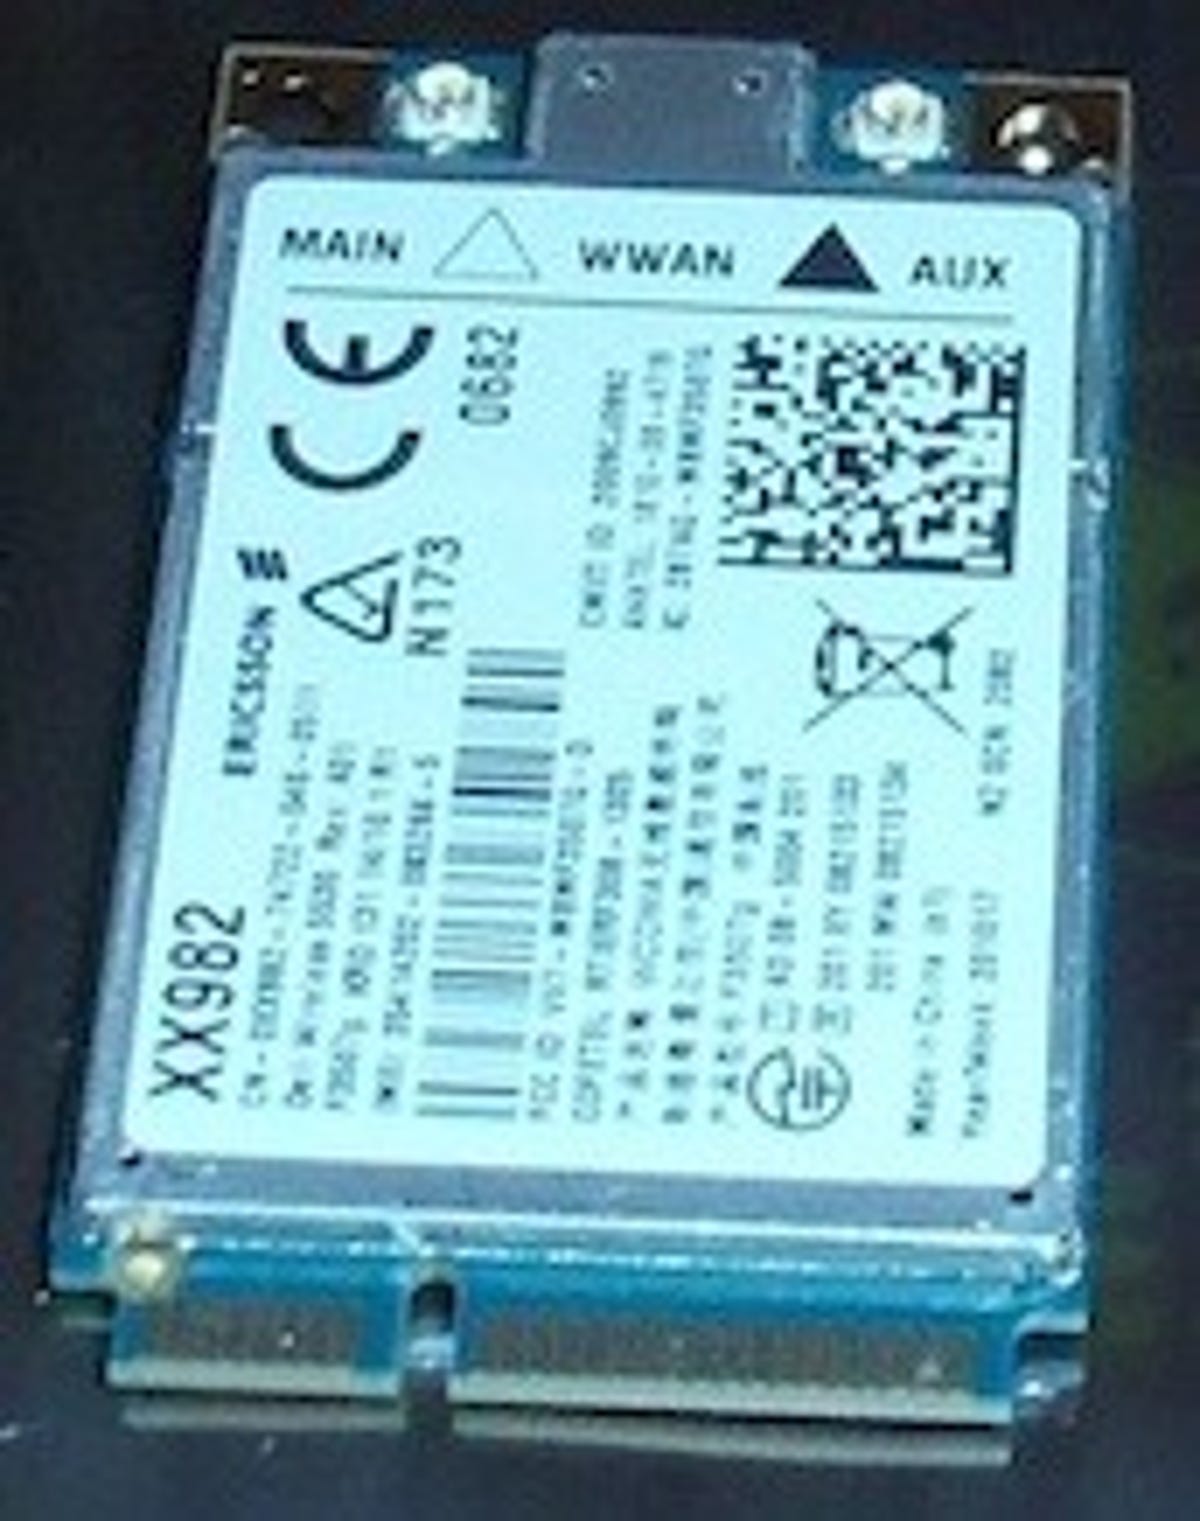 The Dell-Ericsson WWAN (3G) PCI Express Mini Card.